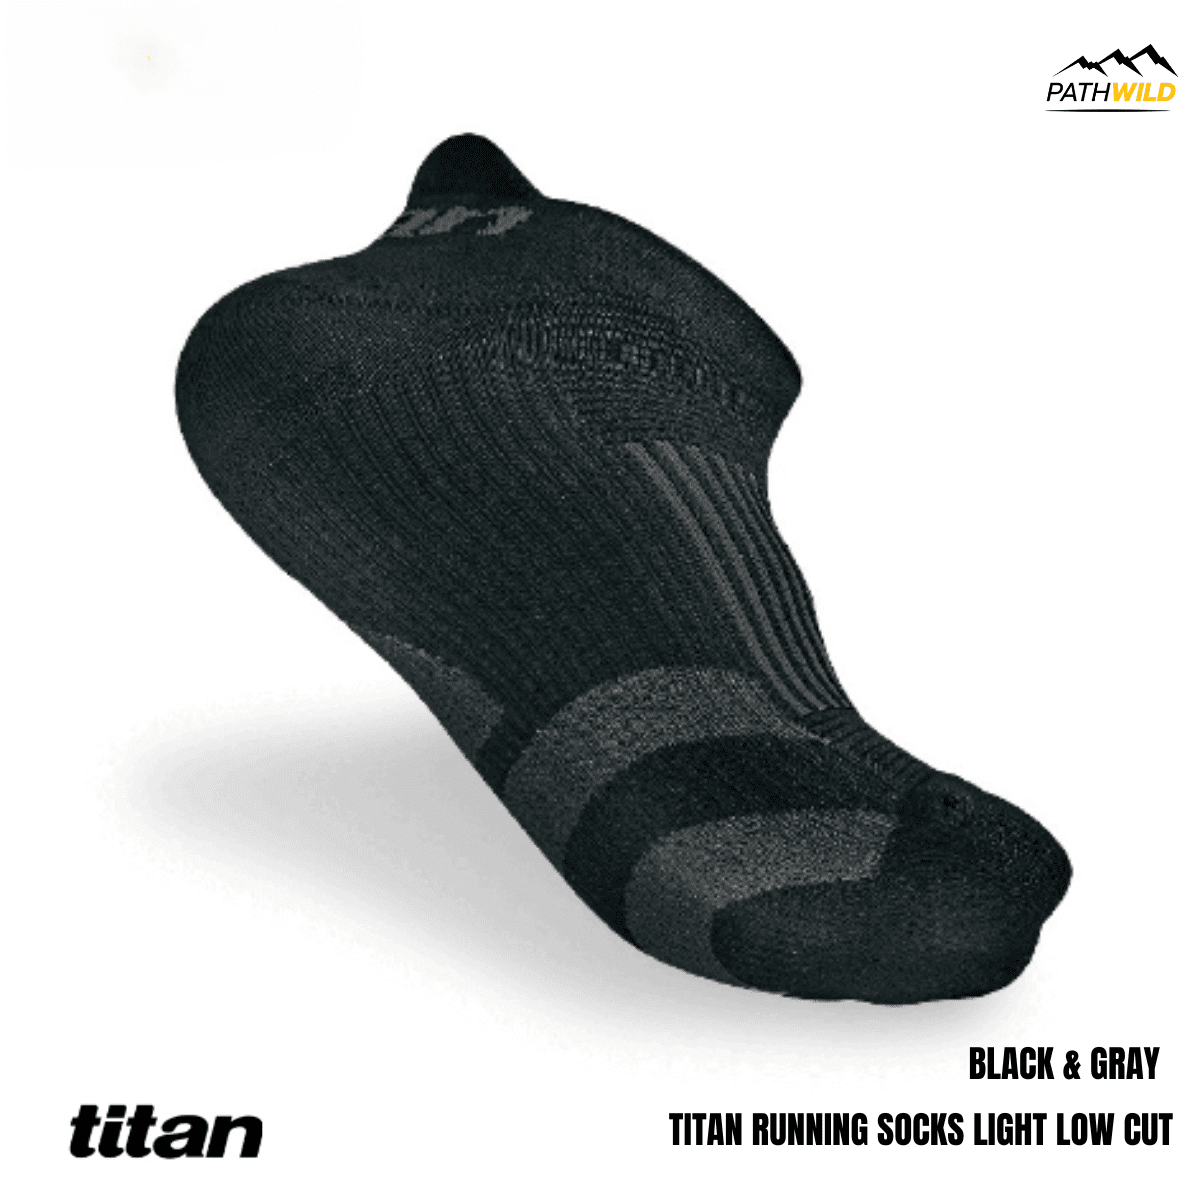 ถุงเท้า TITAN ถุงเท้าข้อสั้น ถุงเท้าข้อสั้น TITAN ถุงเท้าออกกำลังกายข้อสั้น ถุงเท้าออกกำลังกาย ถุงเท้าวิ่ง